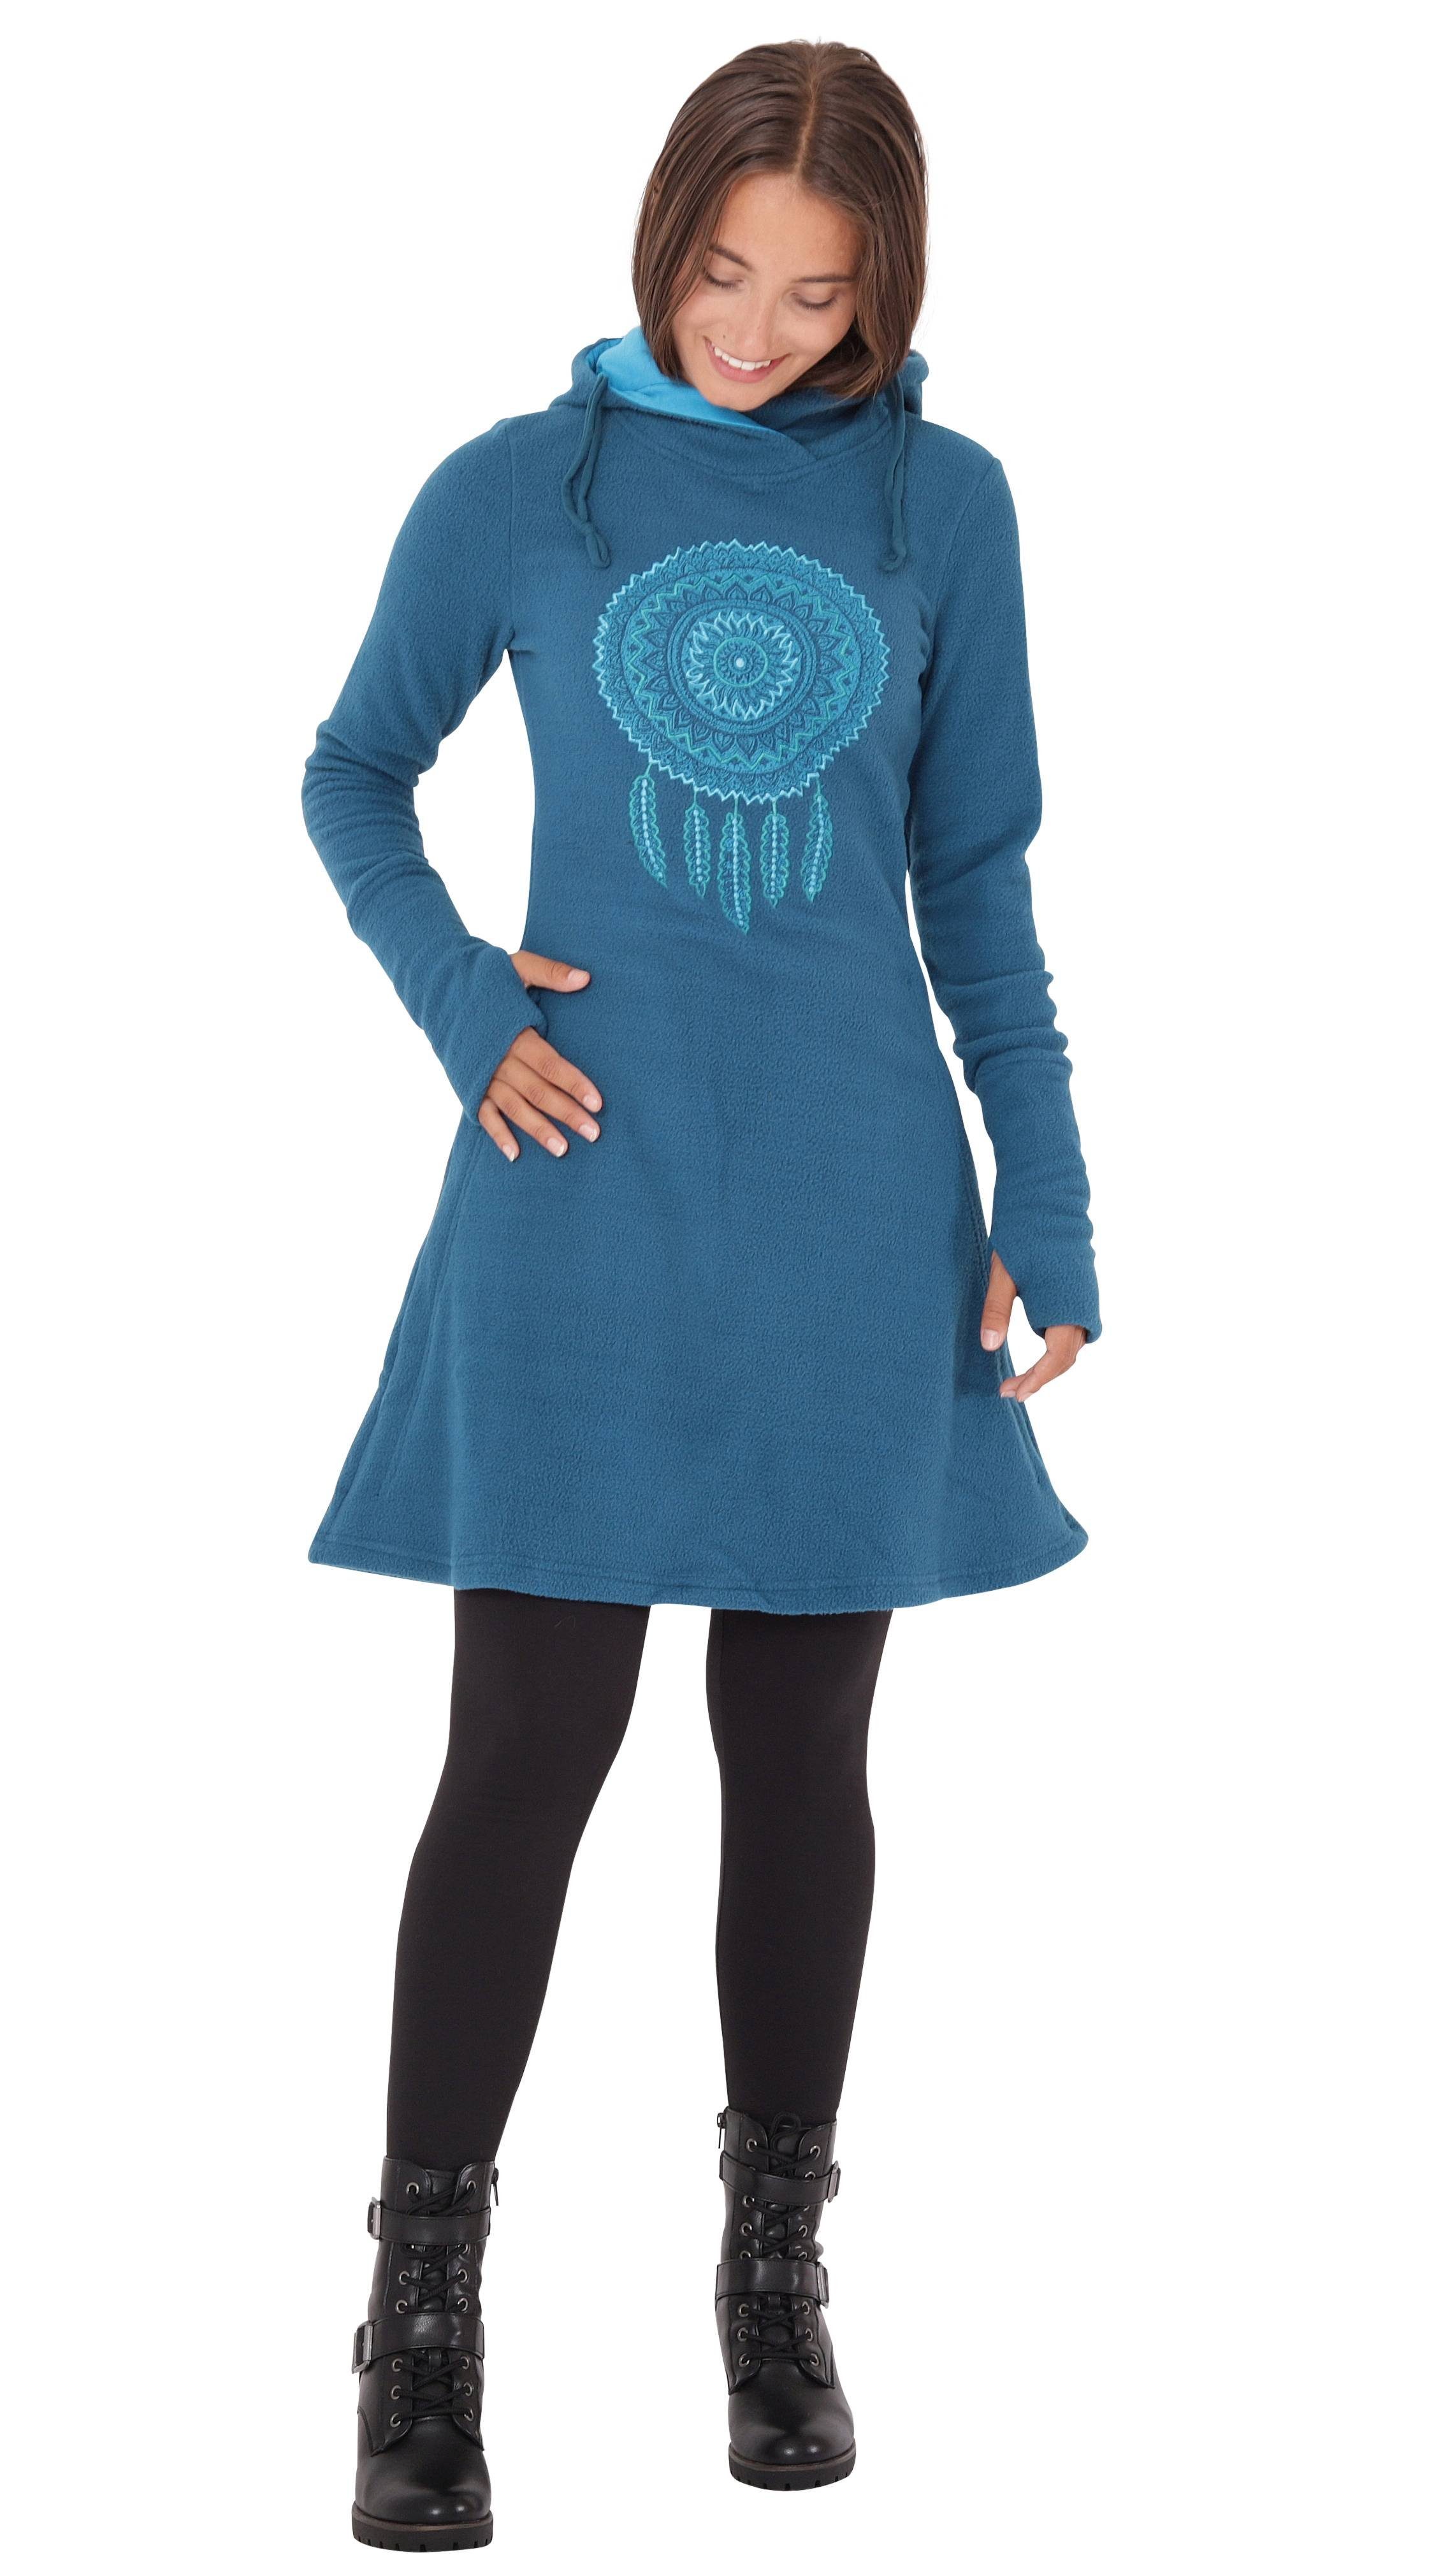 Blau Fleece mit Traumfänger Winterkleid Kapuzenkleid dr31 A-Linien-Kleid PUREWONDER